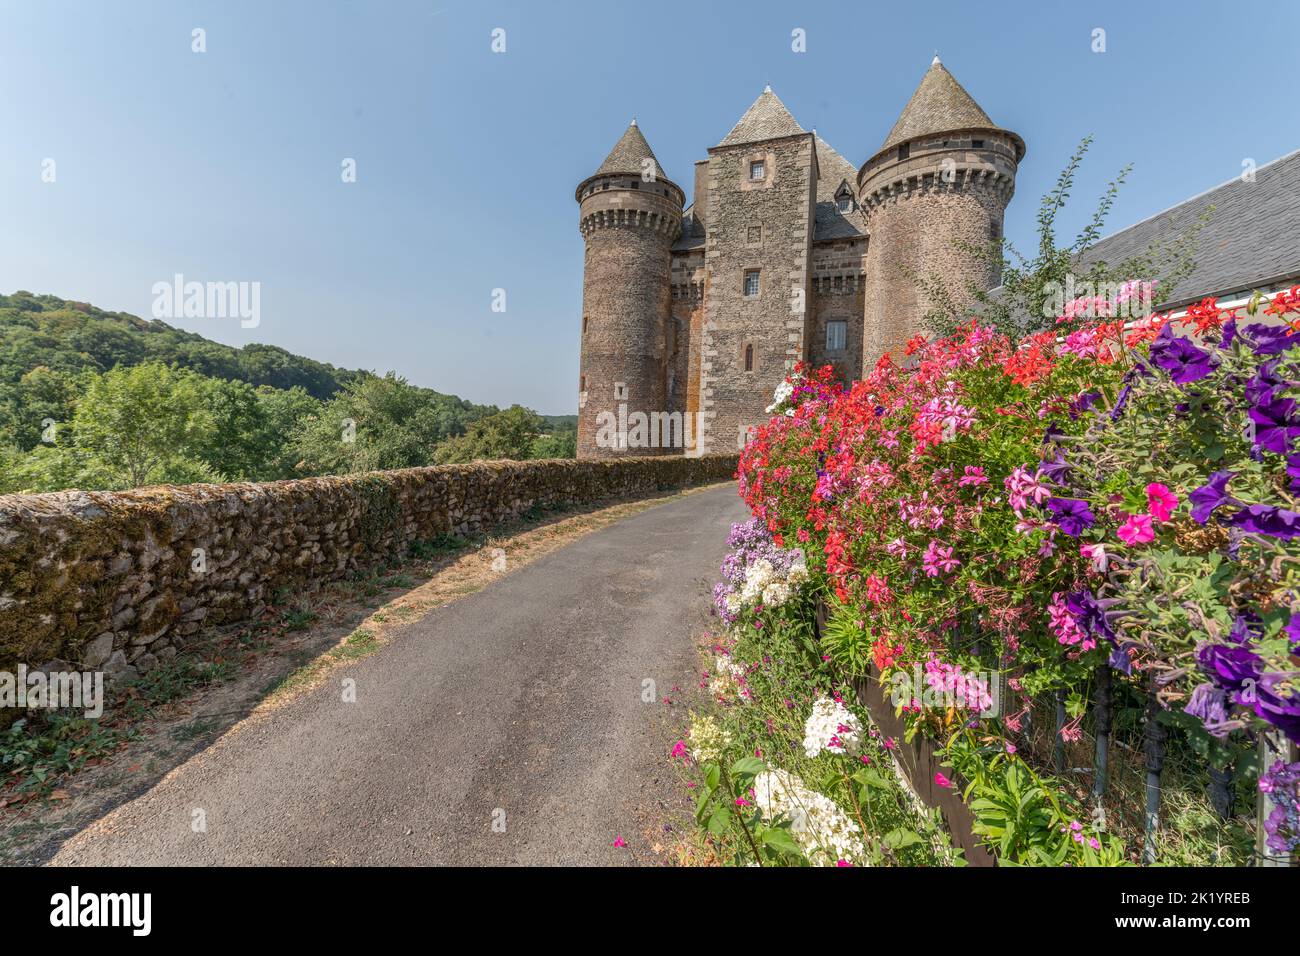 Bousquet castillo del siglo 14th, clasificado como monumento histórico. Montpeyroux, Aveyron, Francia. Foto de stock